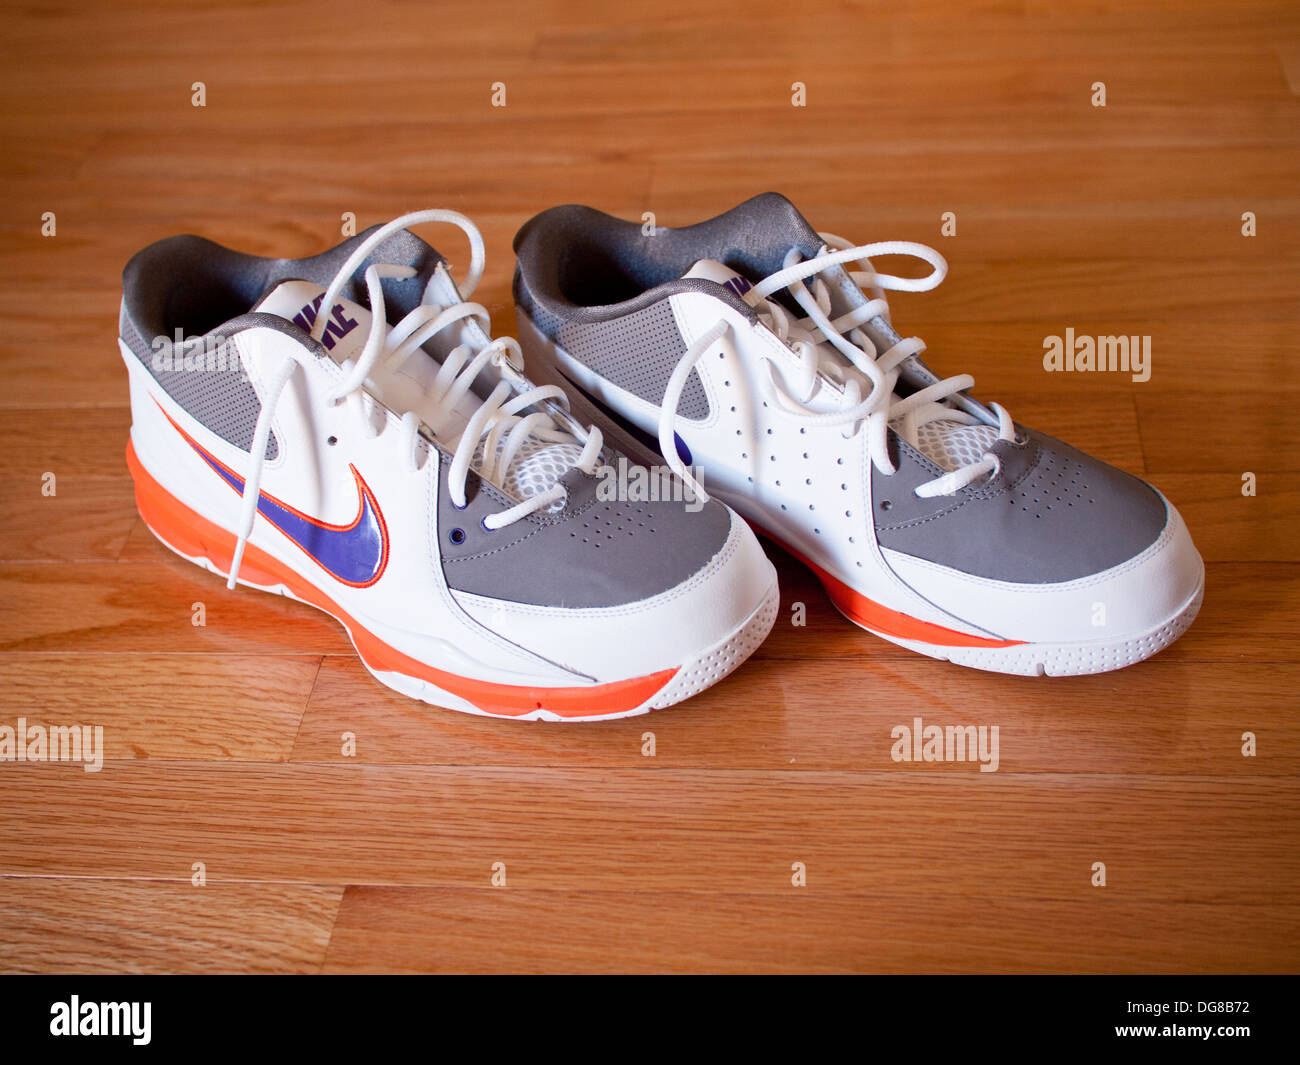 A pair of Nike Zoom Go Low Steve Nash 